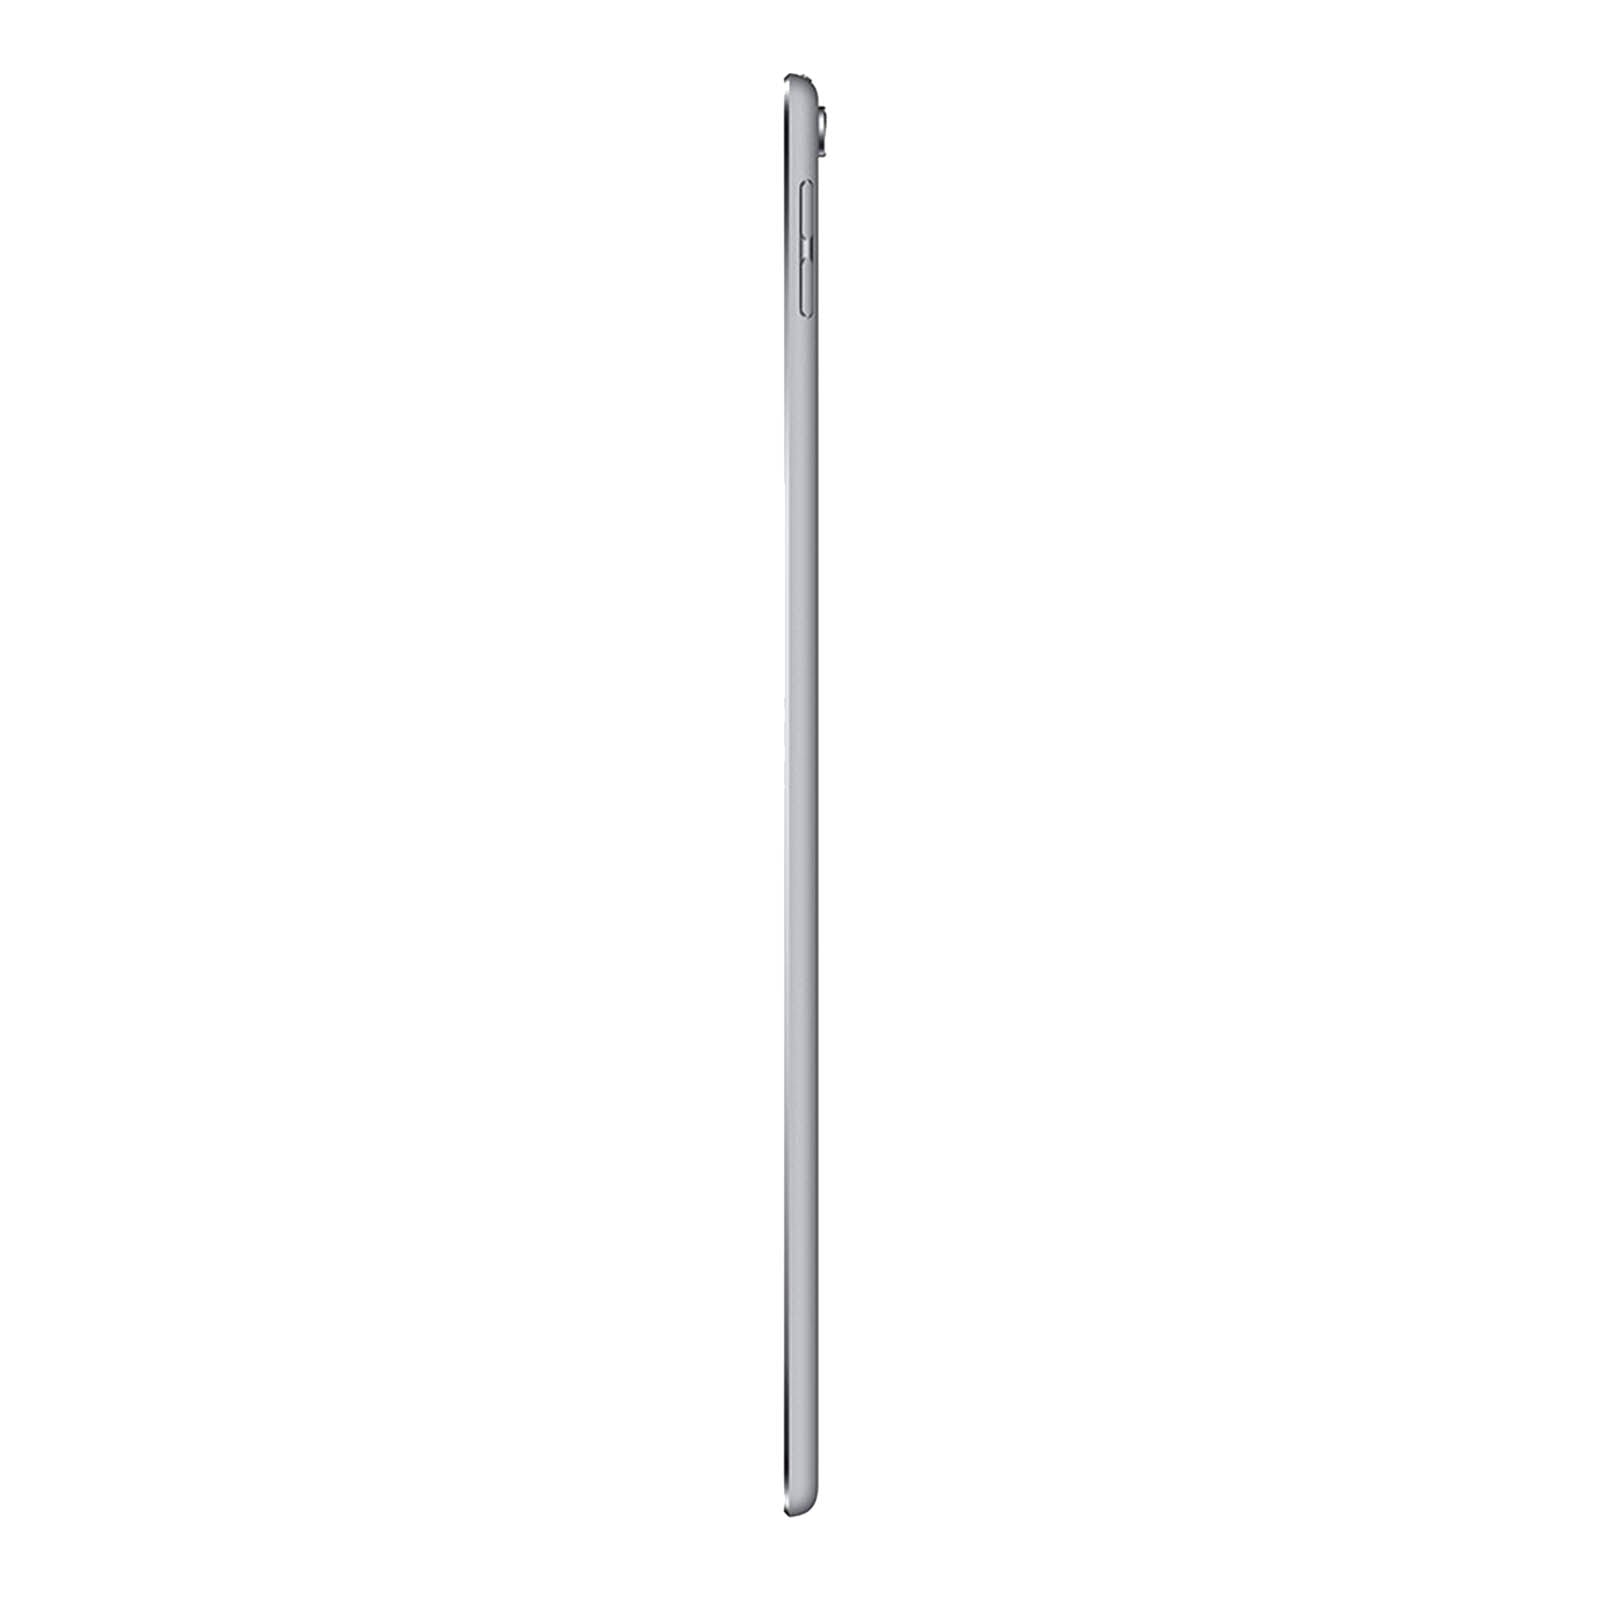 Apple iPad Pro 10.5" 512GB Space Grey - WiFi